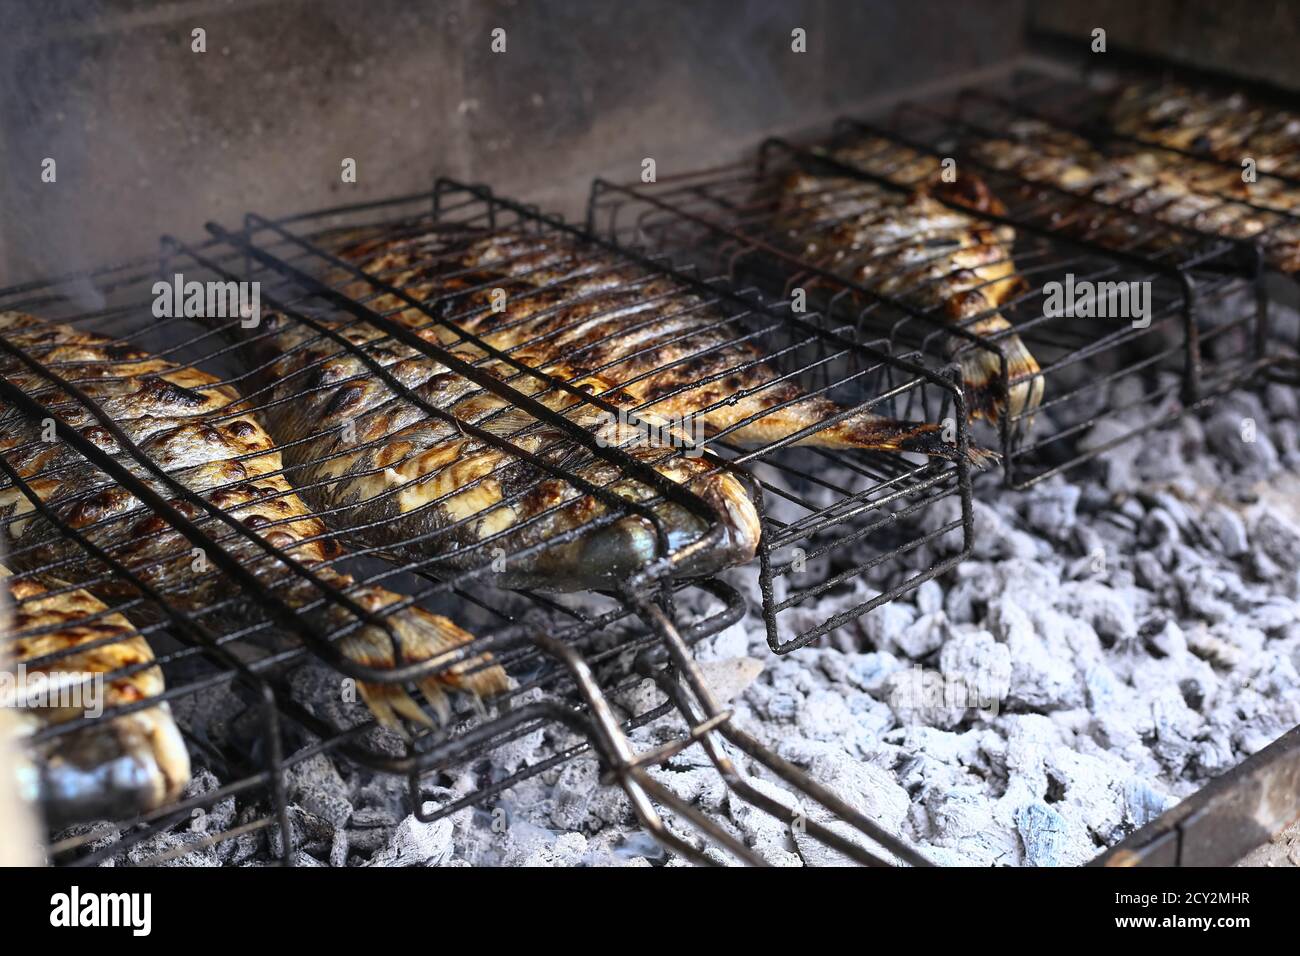 Der Prozess des kochens dorado Fisch auf dem BBQ Feuer backen Grill.  Gegrillte mediterrane Meeresfrüchte auf einem Backsteingrund  Stockfotografie - Alamy